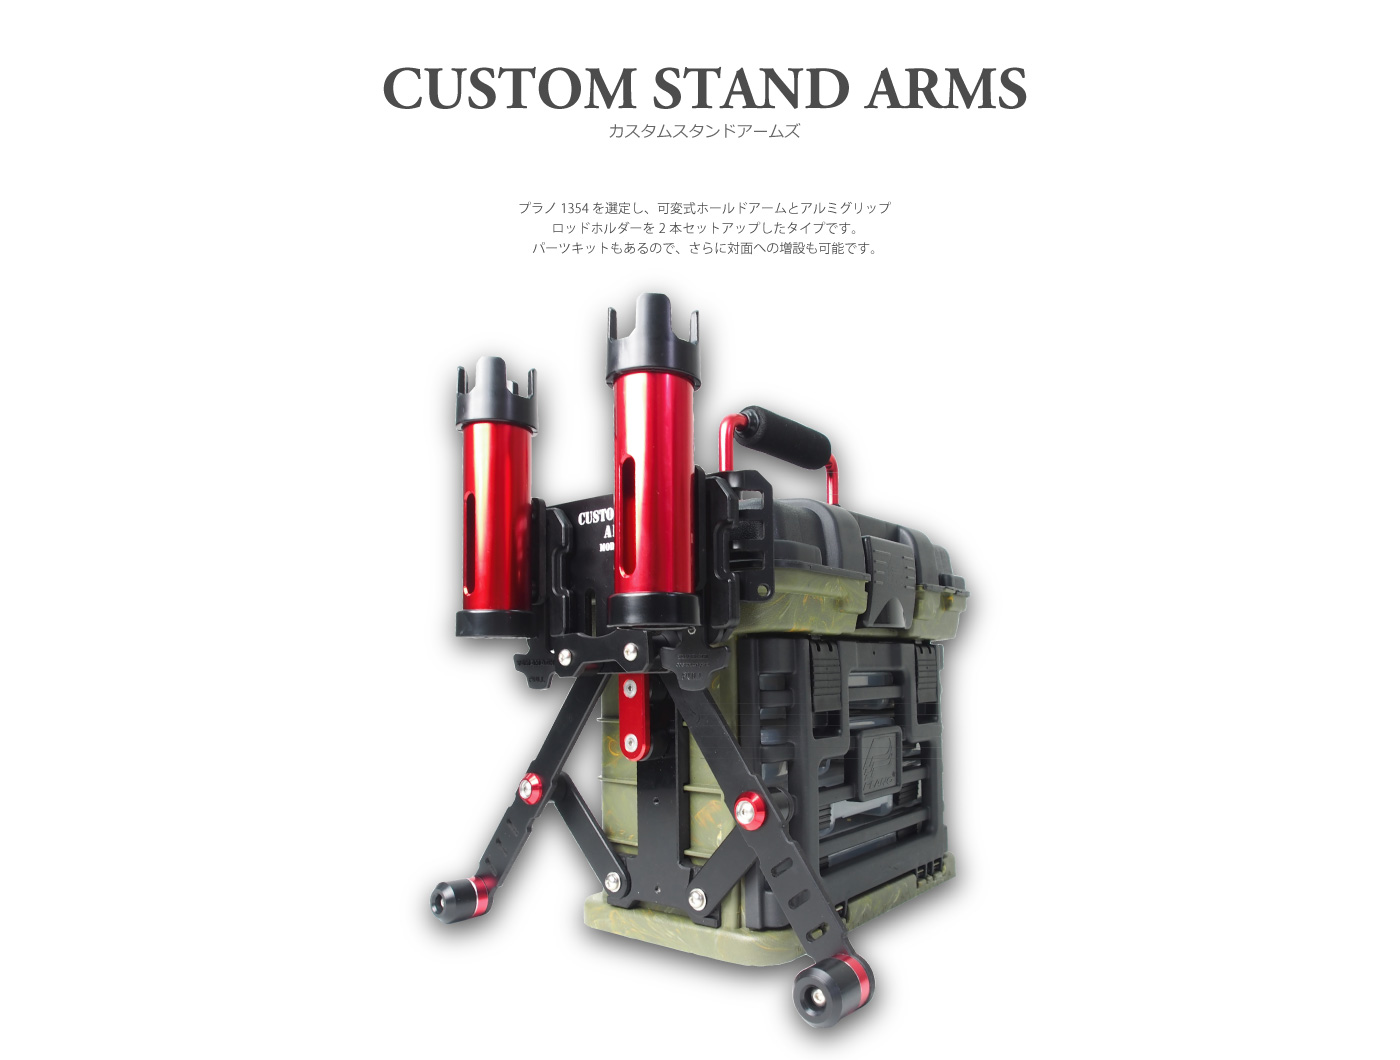 Tanahashi Custom Stand Arms / Transportbox Für Das Spinnangeln / Farbe: Grün Mit Roten Anbauteilen